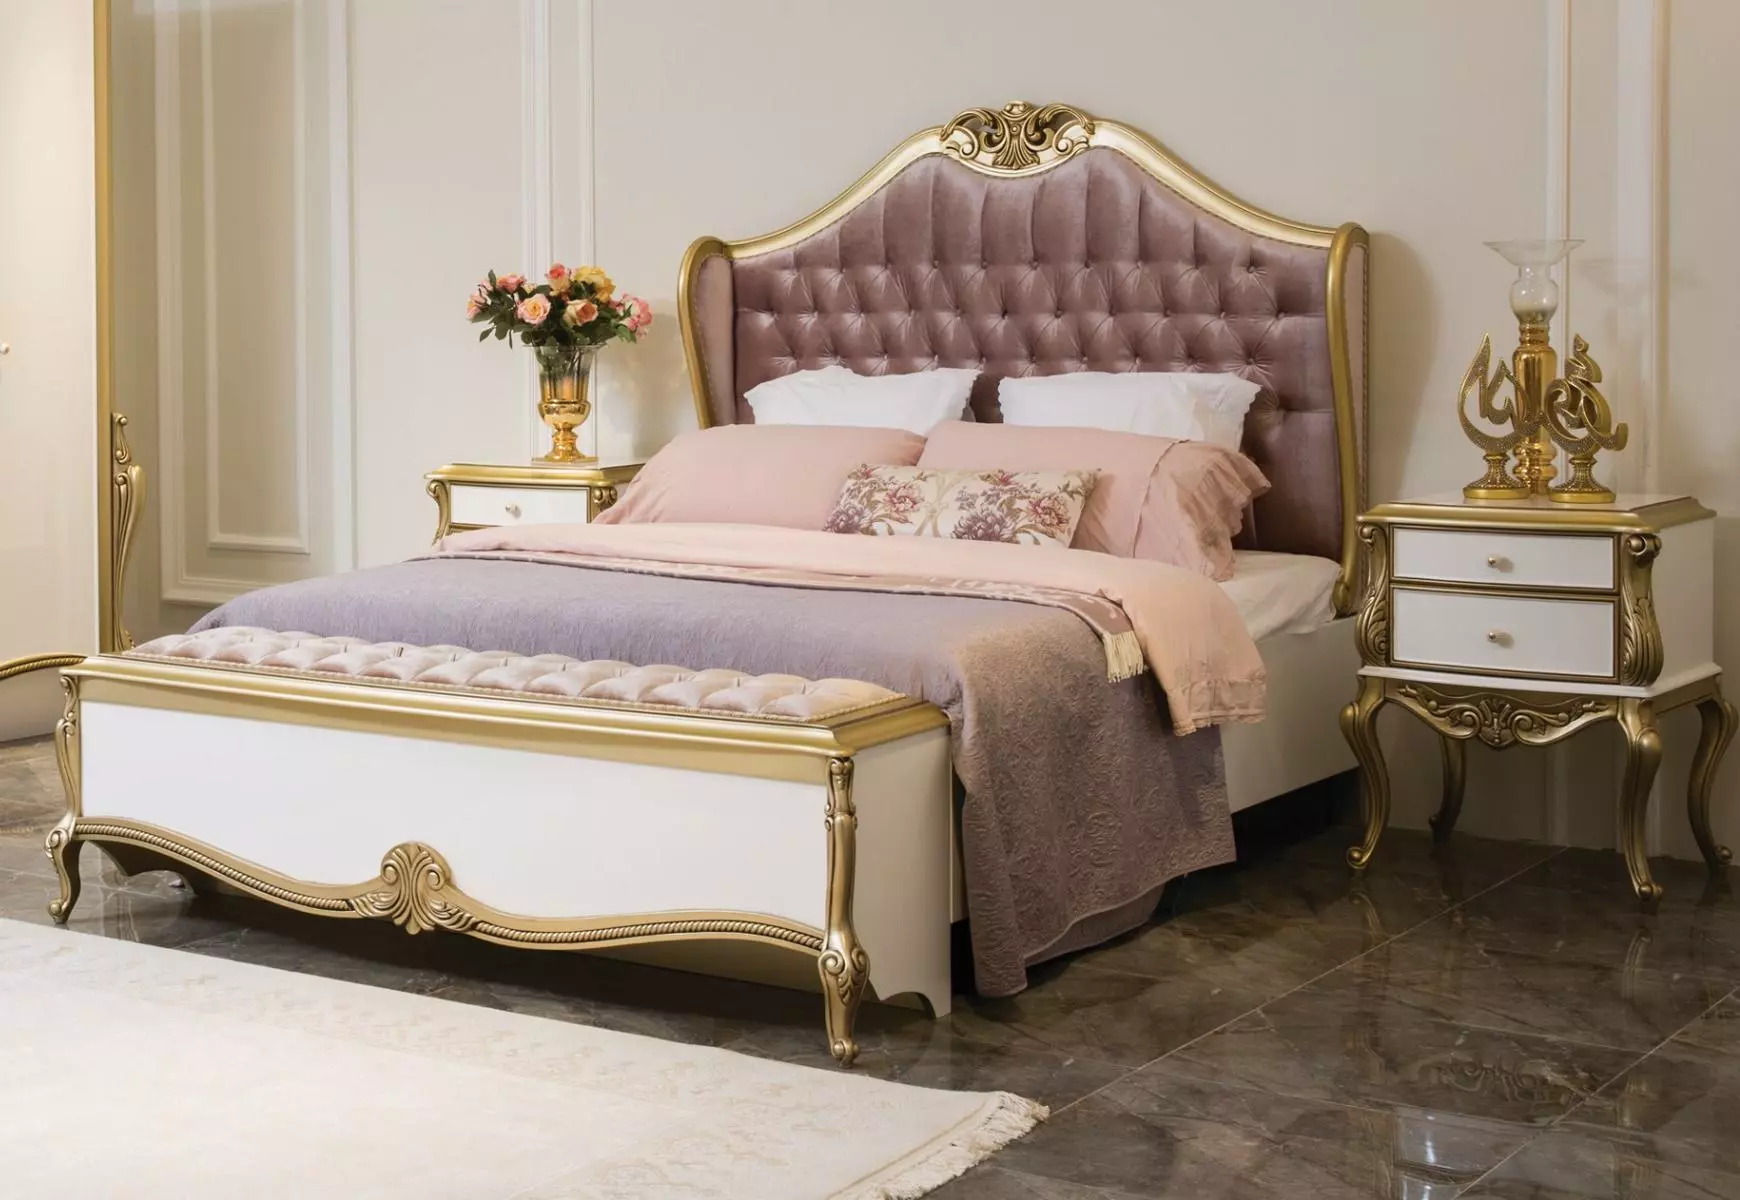 Chesterfield Bettrahmen Design Polster Luxus Bett Schlafzimmer Betten Rosa